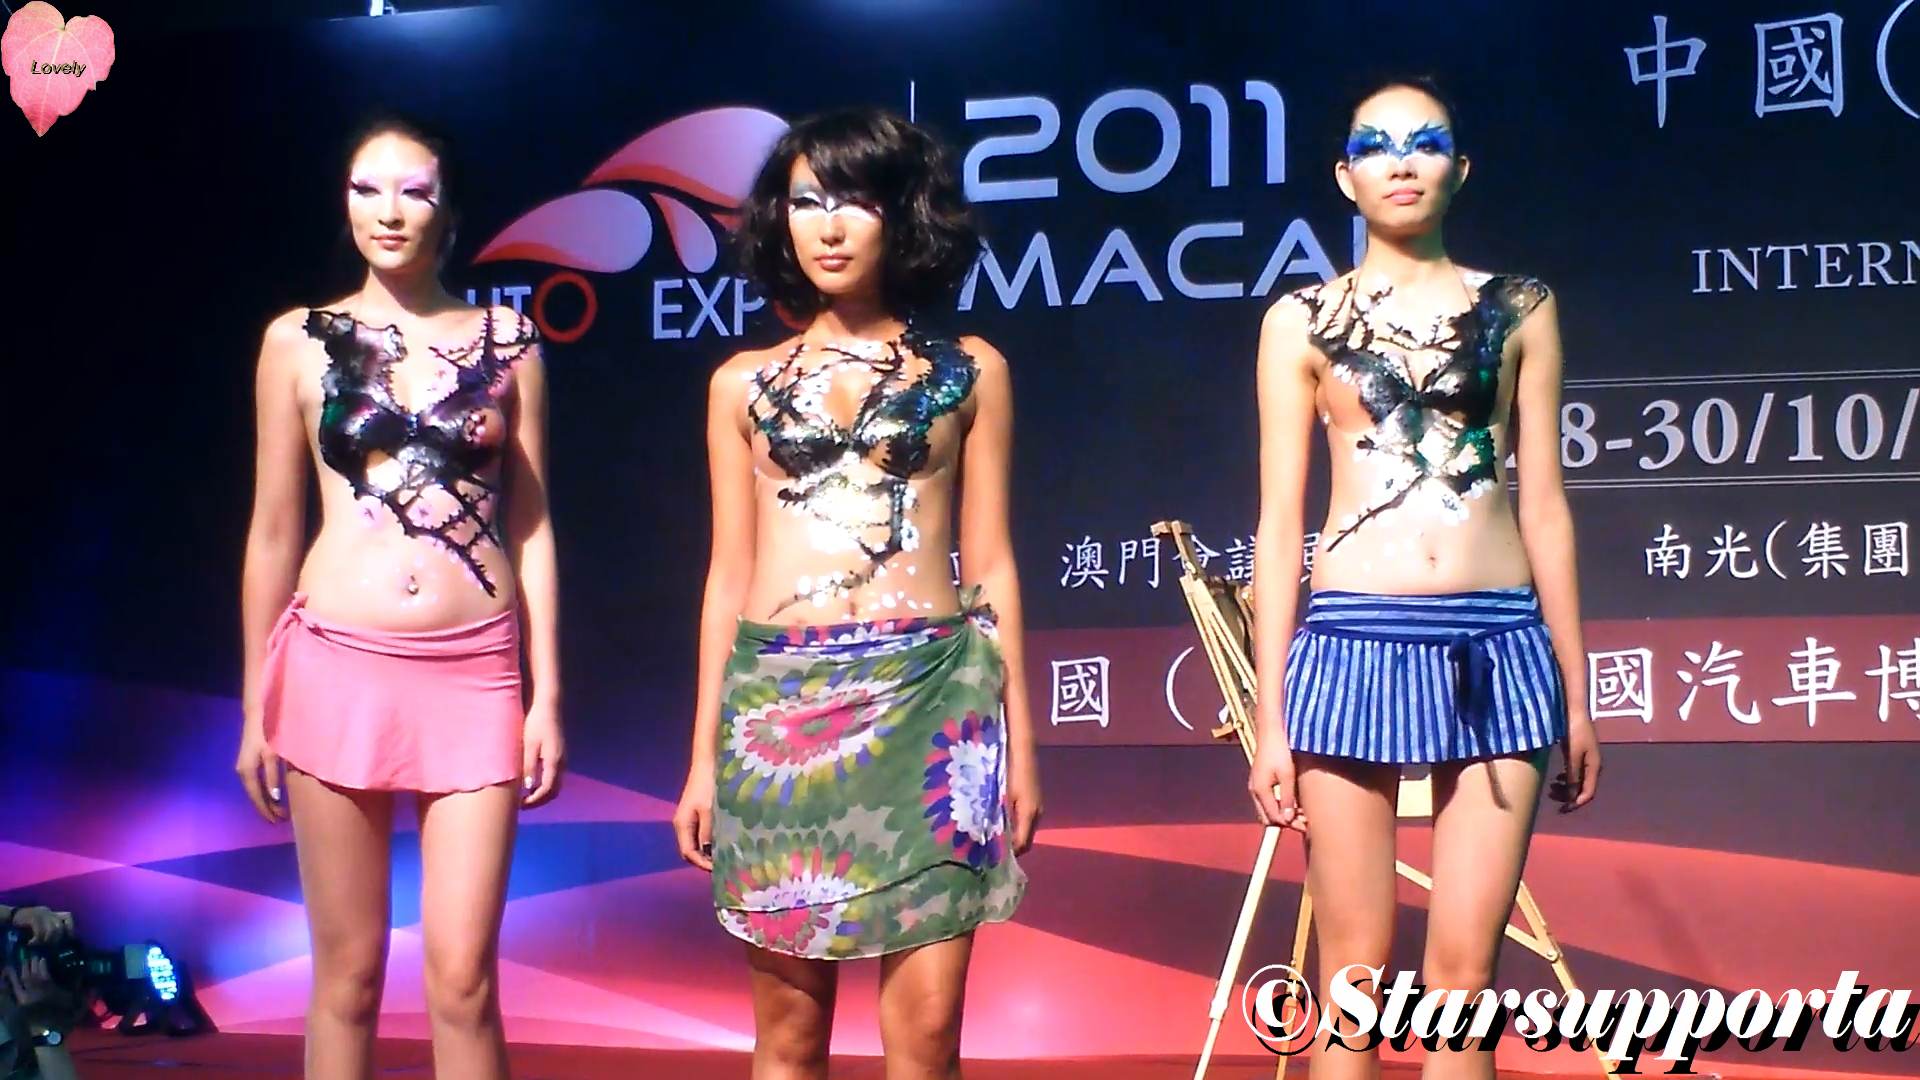 20111028 第一屆中國(澳門)國際汽車博覽會 - 主舞台: 汽車模特彩繪秀 @ 澳門斯尼斯人